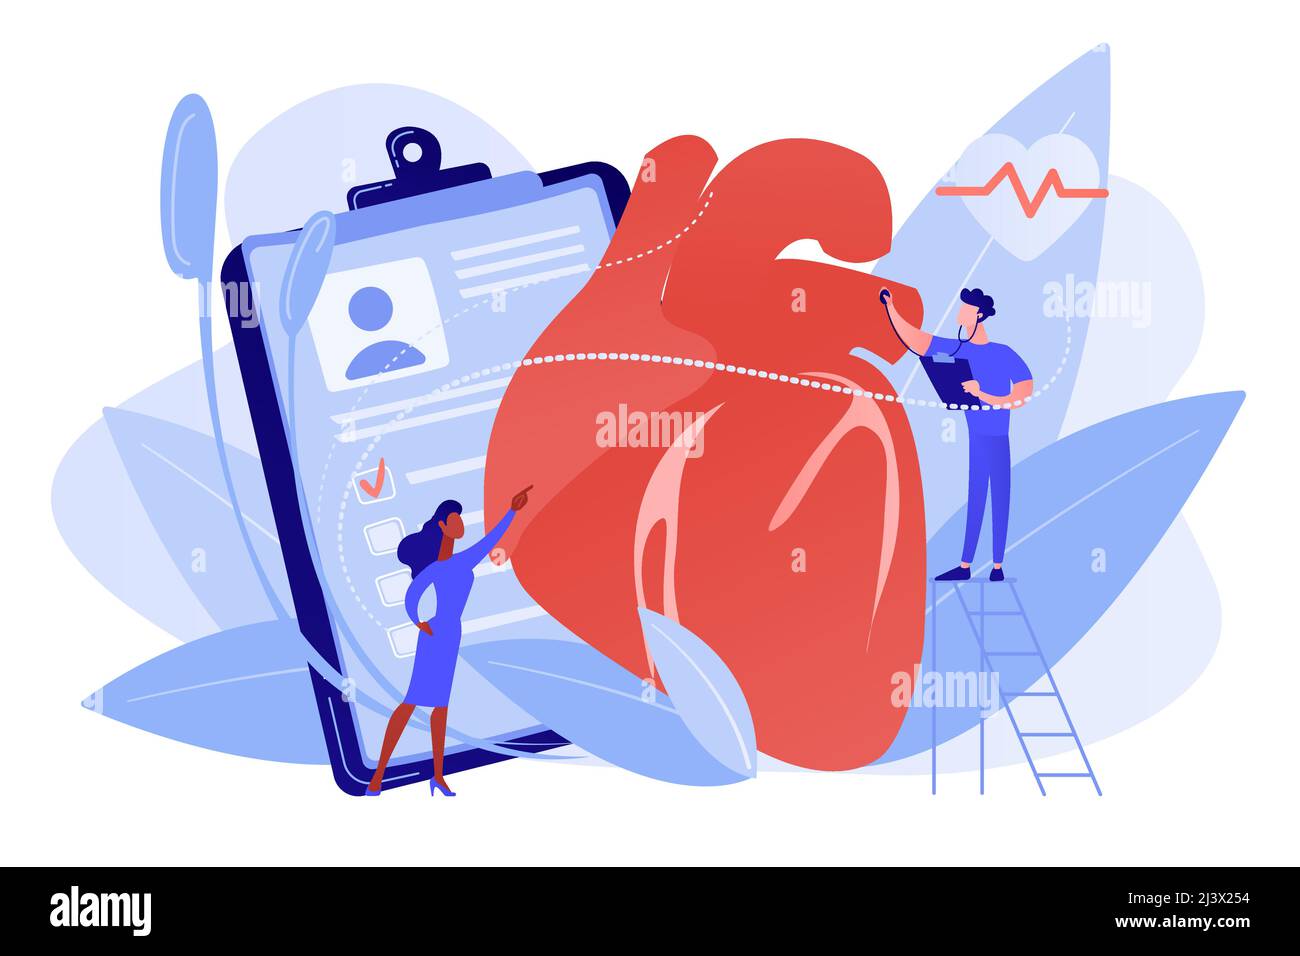 Arzt mit Stethoskop, der einem riesigen Herzschlag lauscht. Ischämische Herzkrankheit, Herzkrankheit und koronare Herzkrankheit Konzept auf weißem Hintergrund. P Stock Vektor